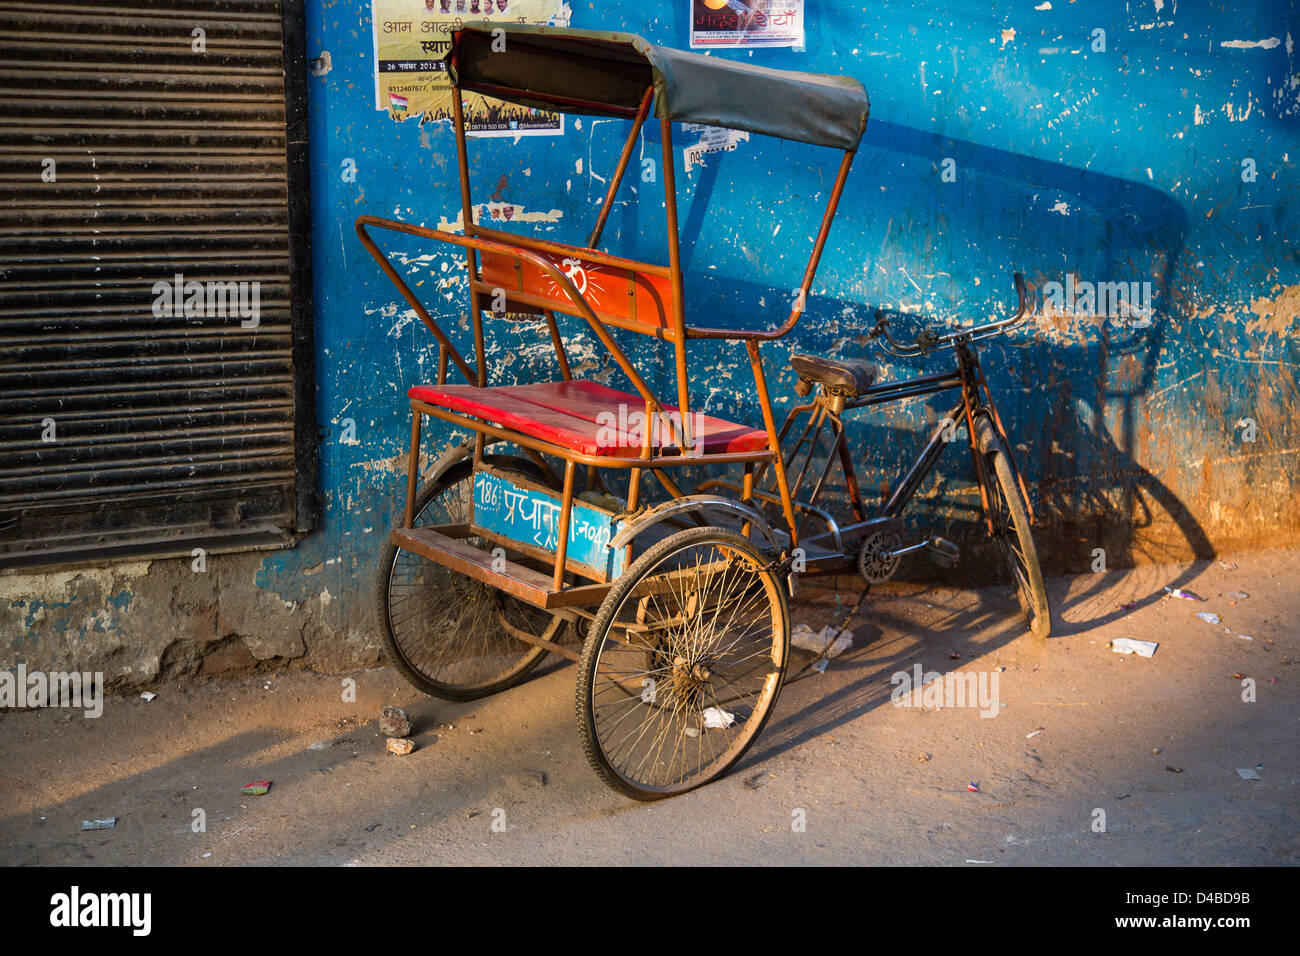 Cyble rickshaw, Delhi, India Stock Photo